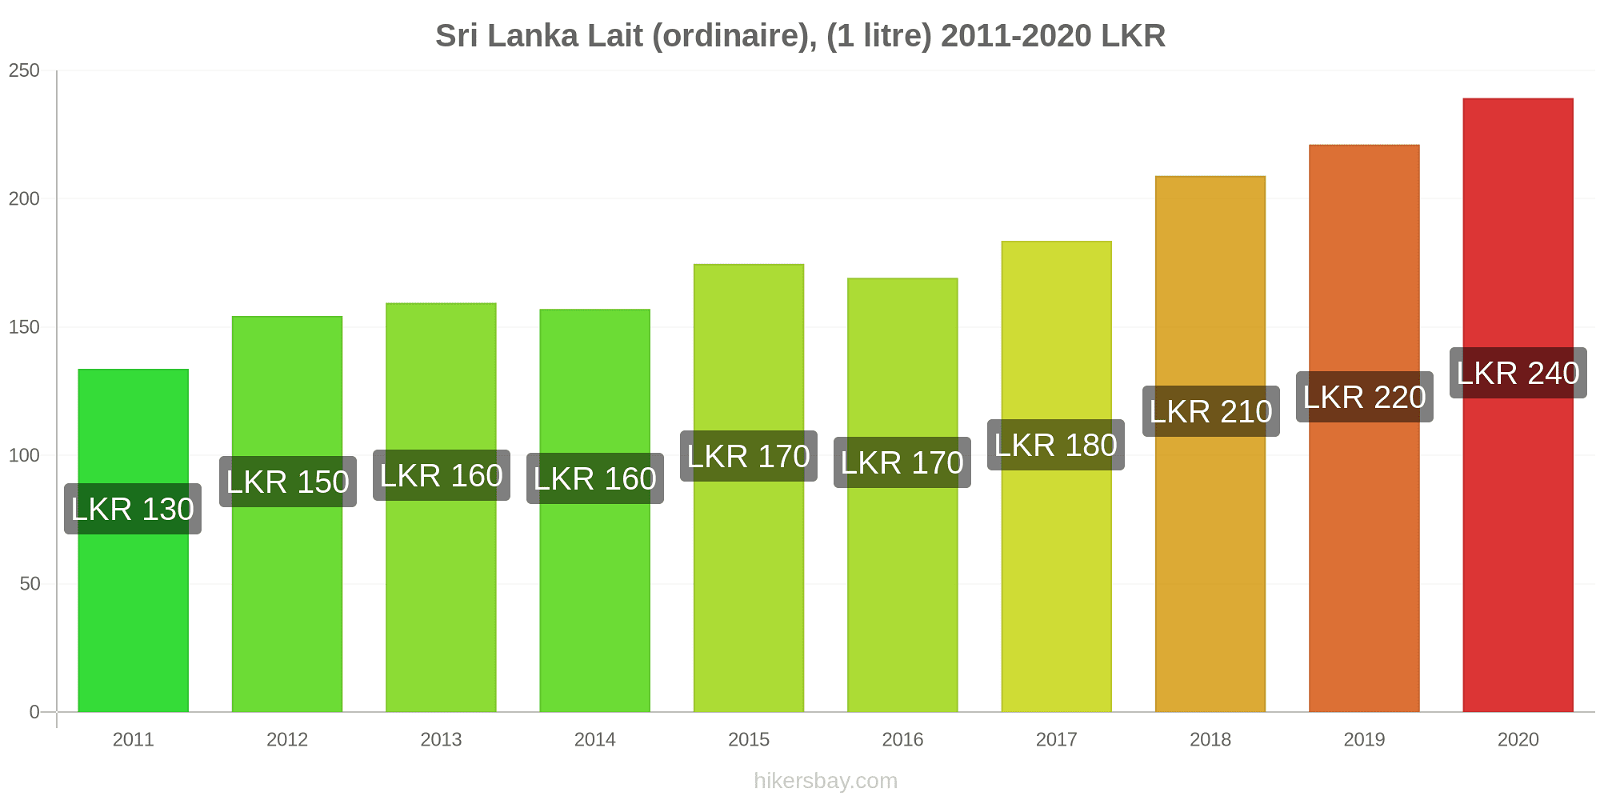 Sri Lanka changements de prix (Régulier), lait (1 litre) hikersbay.com